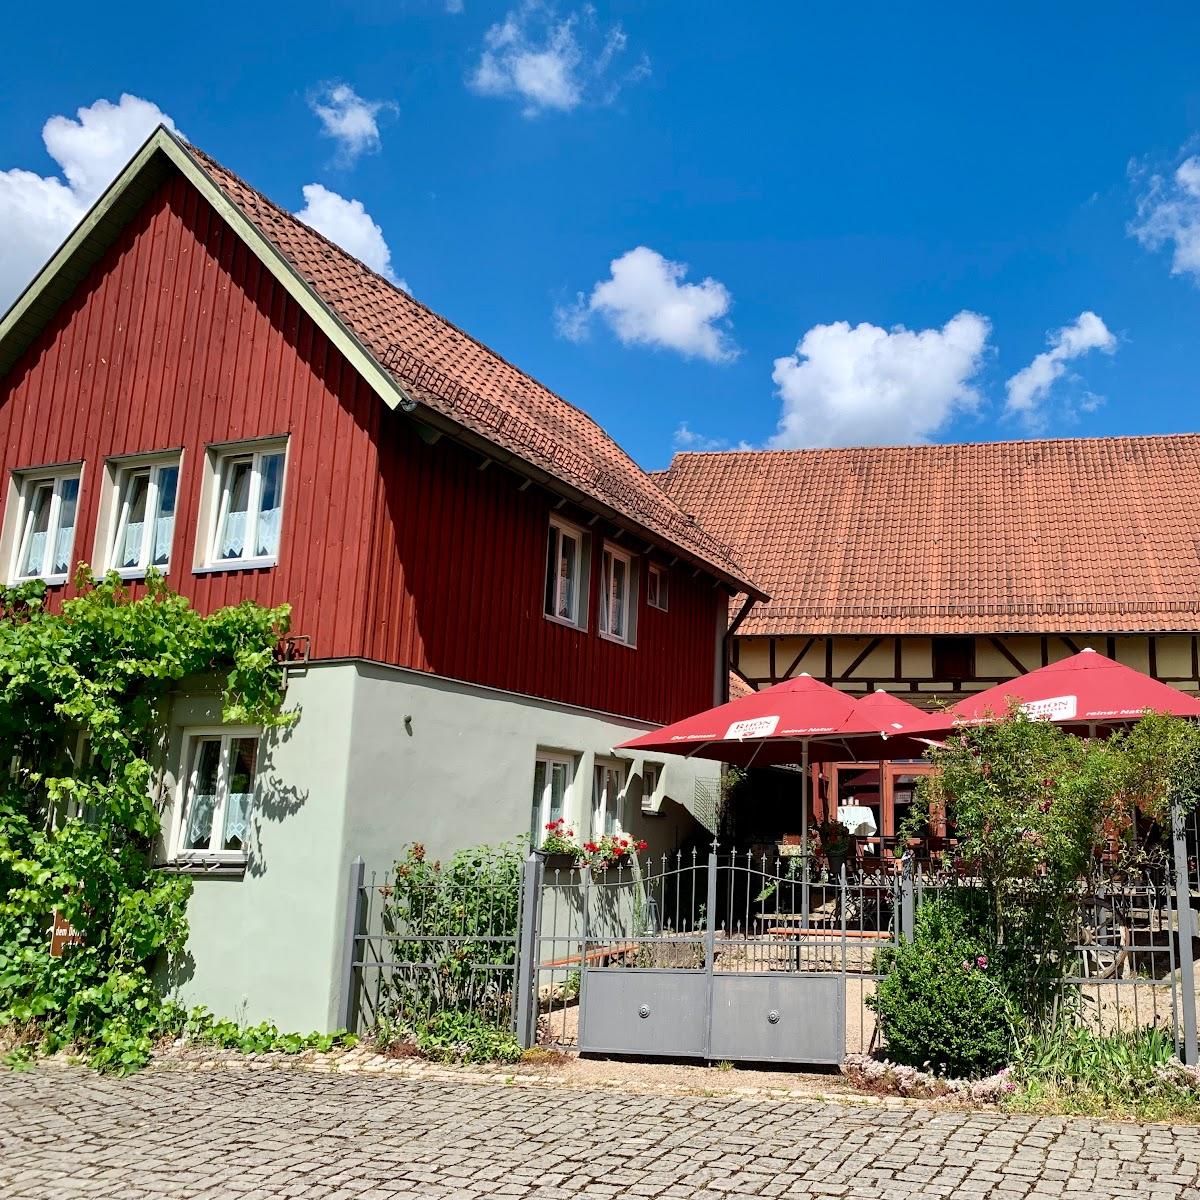 Restaurant "Hotel zur Sonne" in Hohenroth